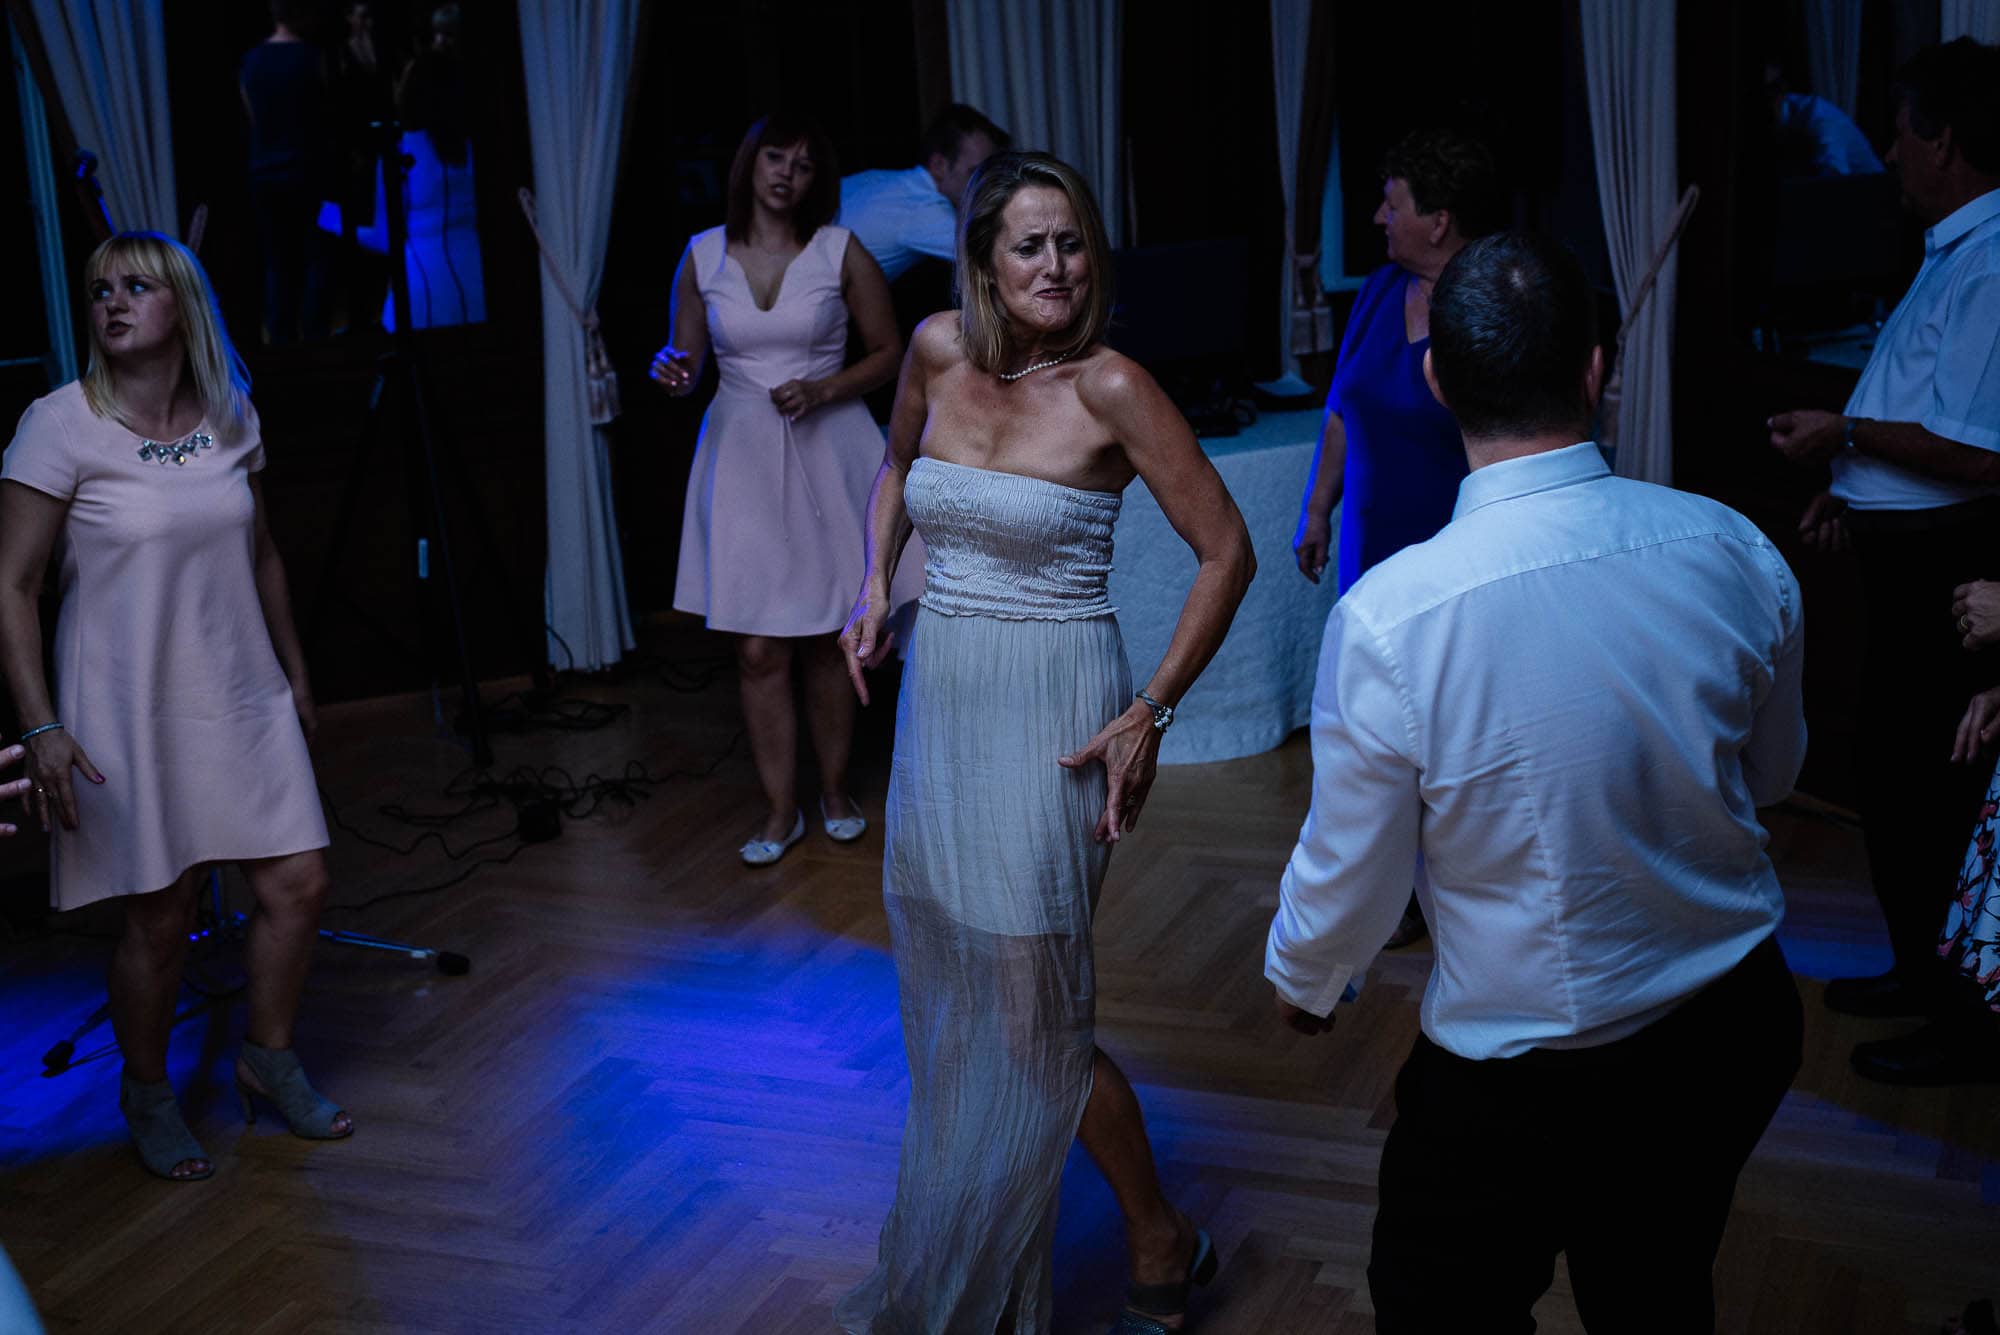 Menschen tanzen bei einer Veranstaltung mit gedämpftem blauem Licht und machen atemberaubende Hochzeitsbilder.